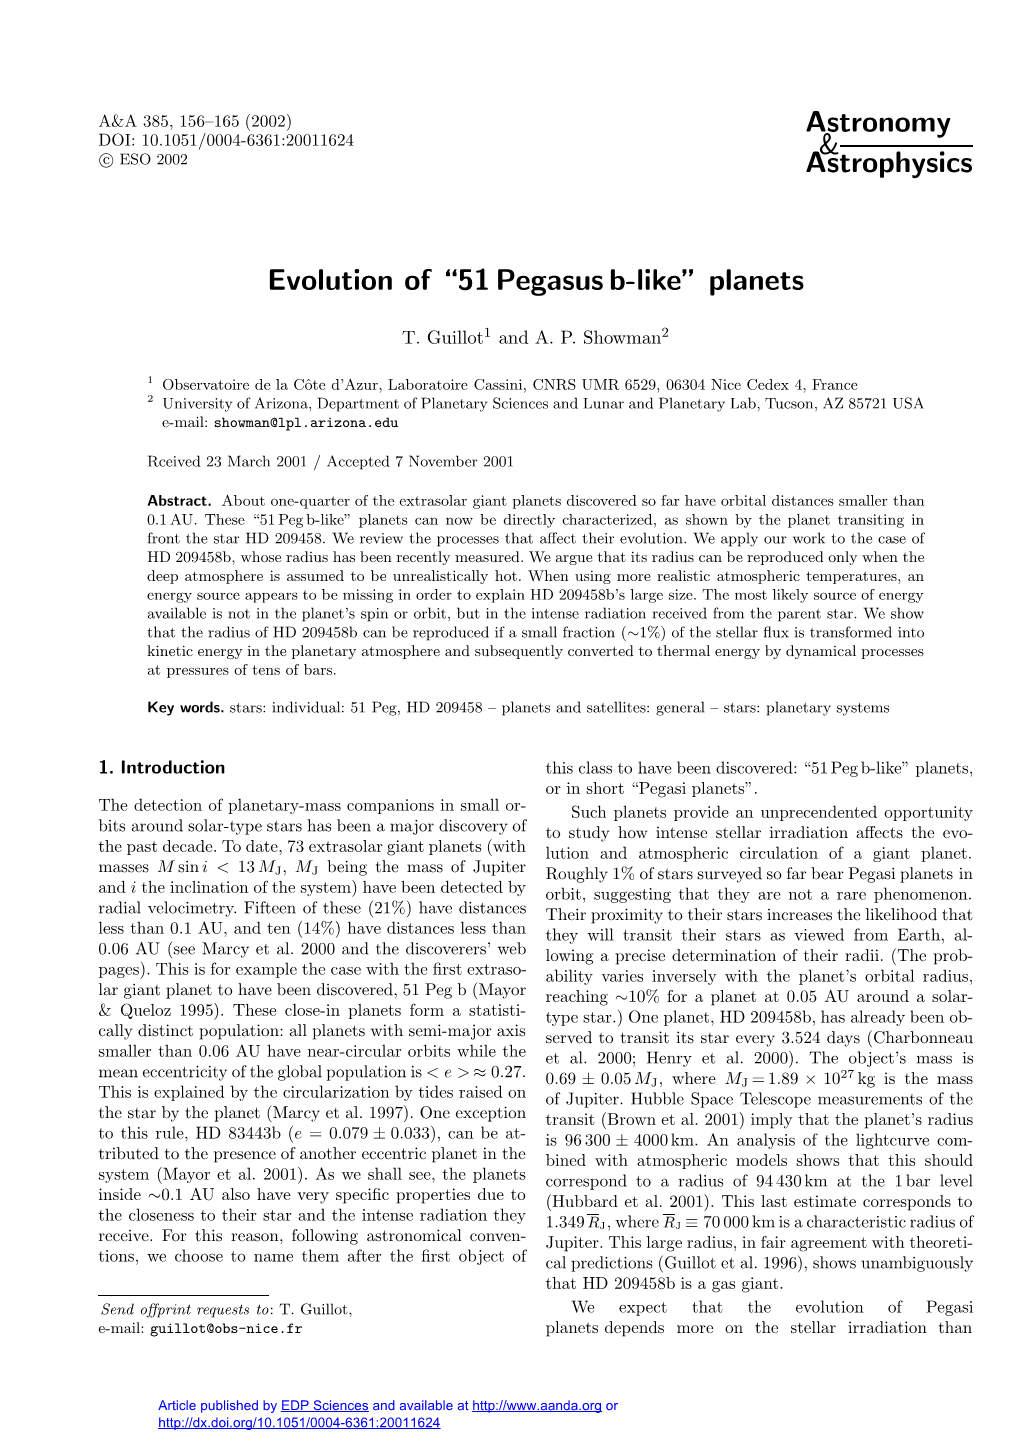 Evolution of “51 Pegasus B-Like” Planets